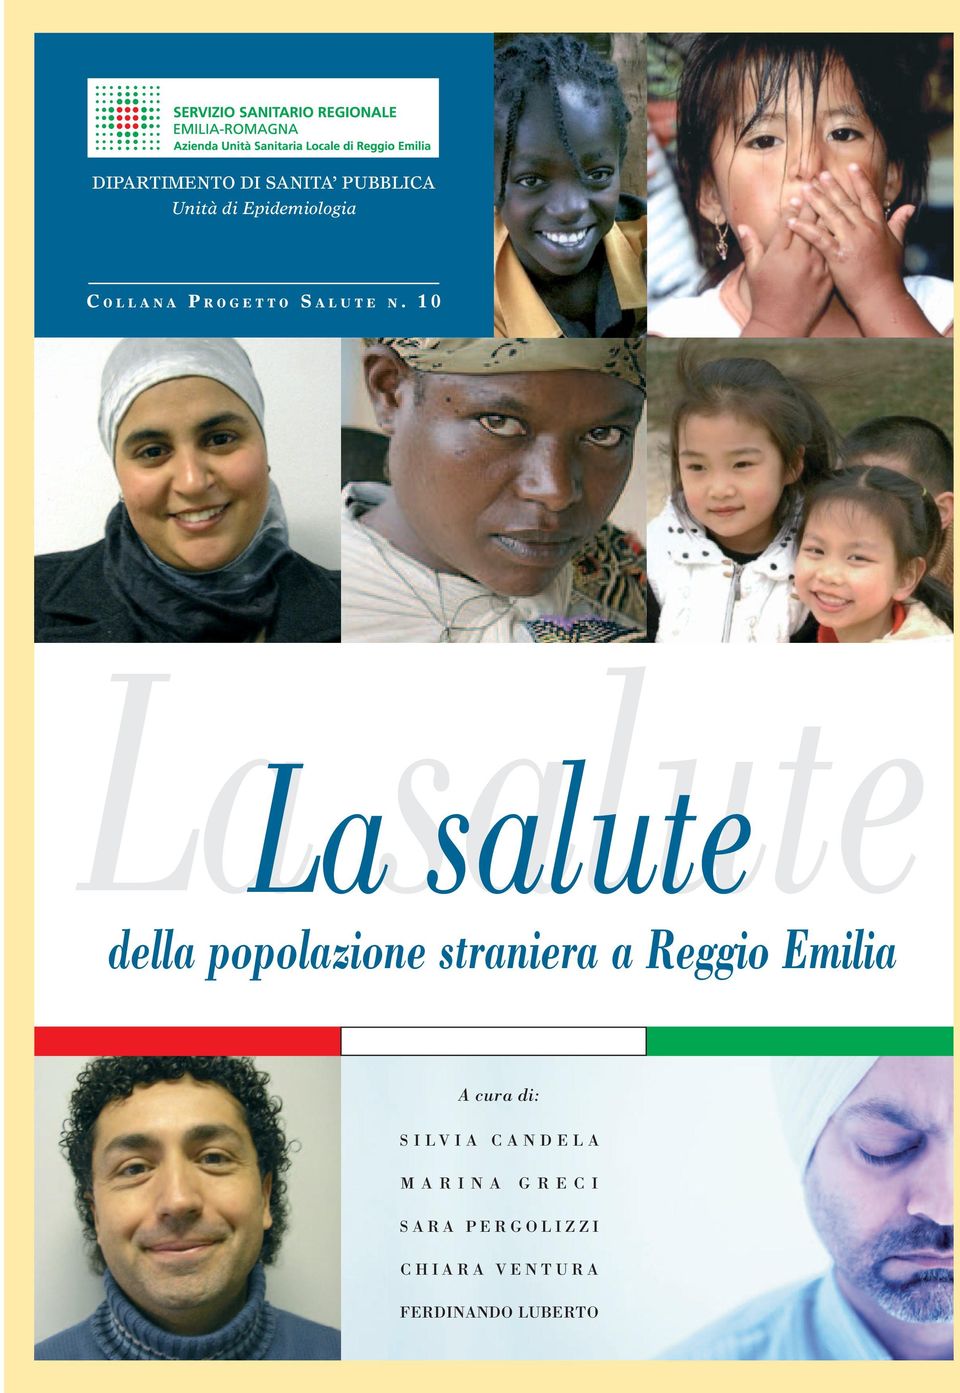 10 La salute della popolazione straniera a Reggio Emilia